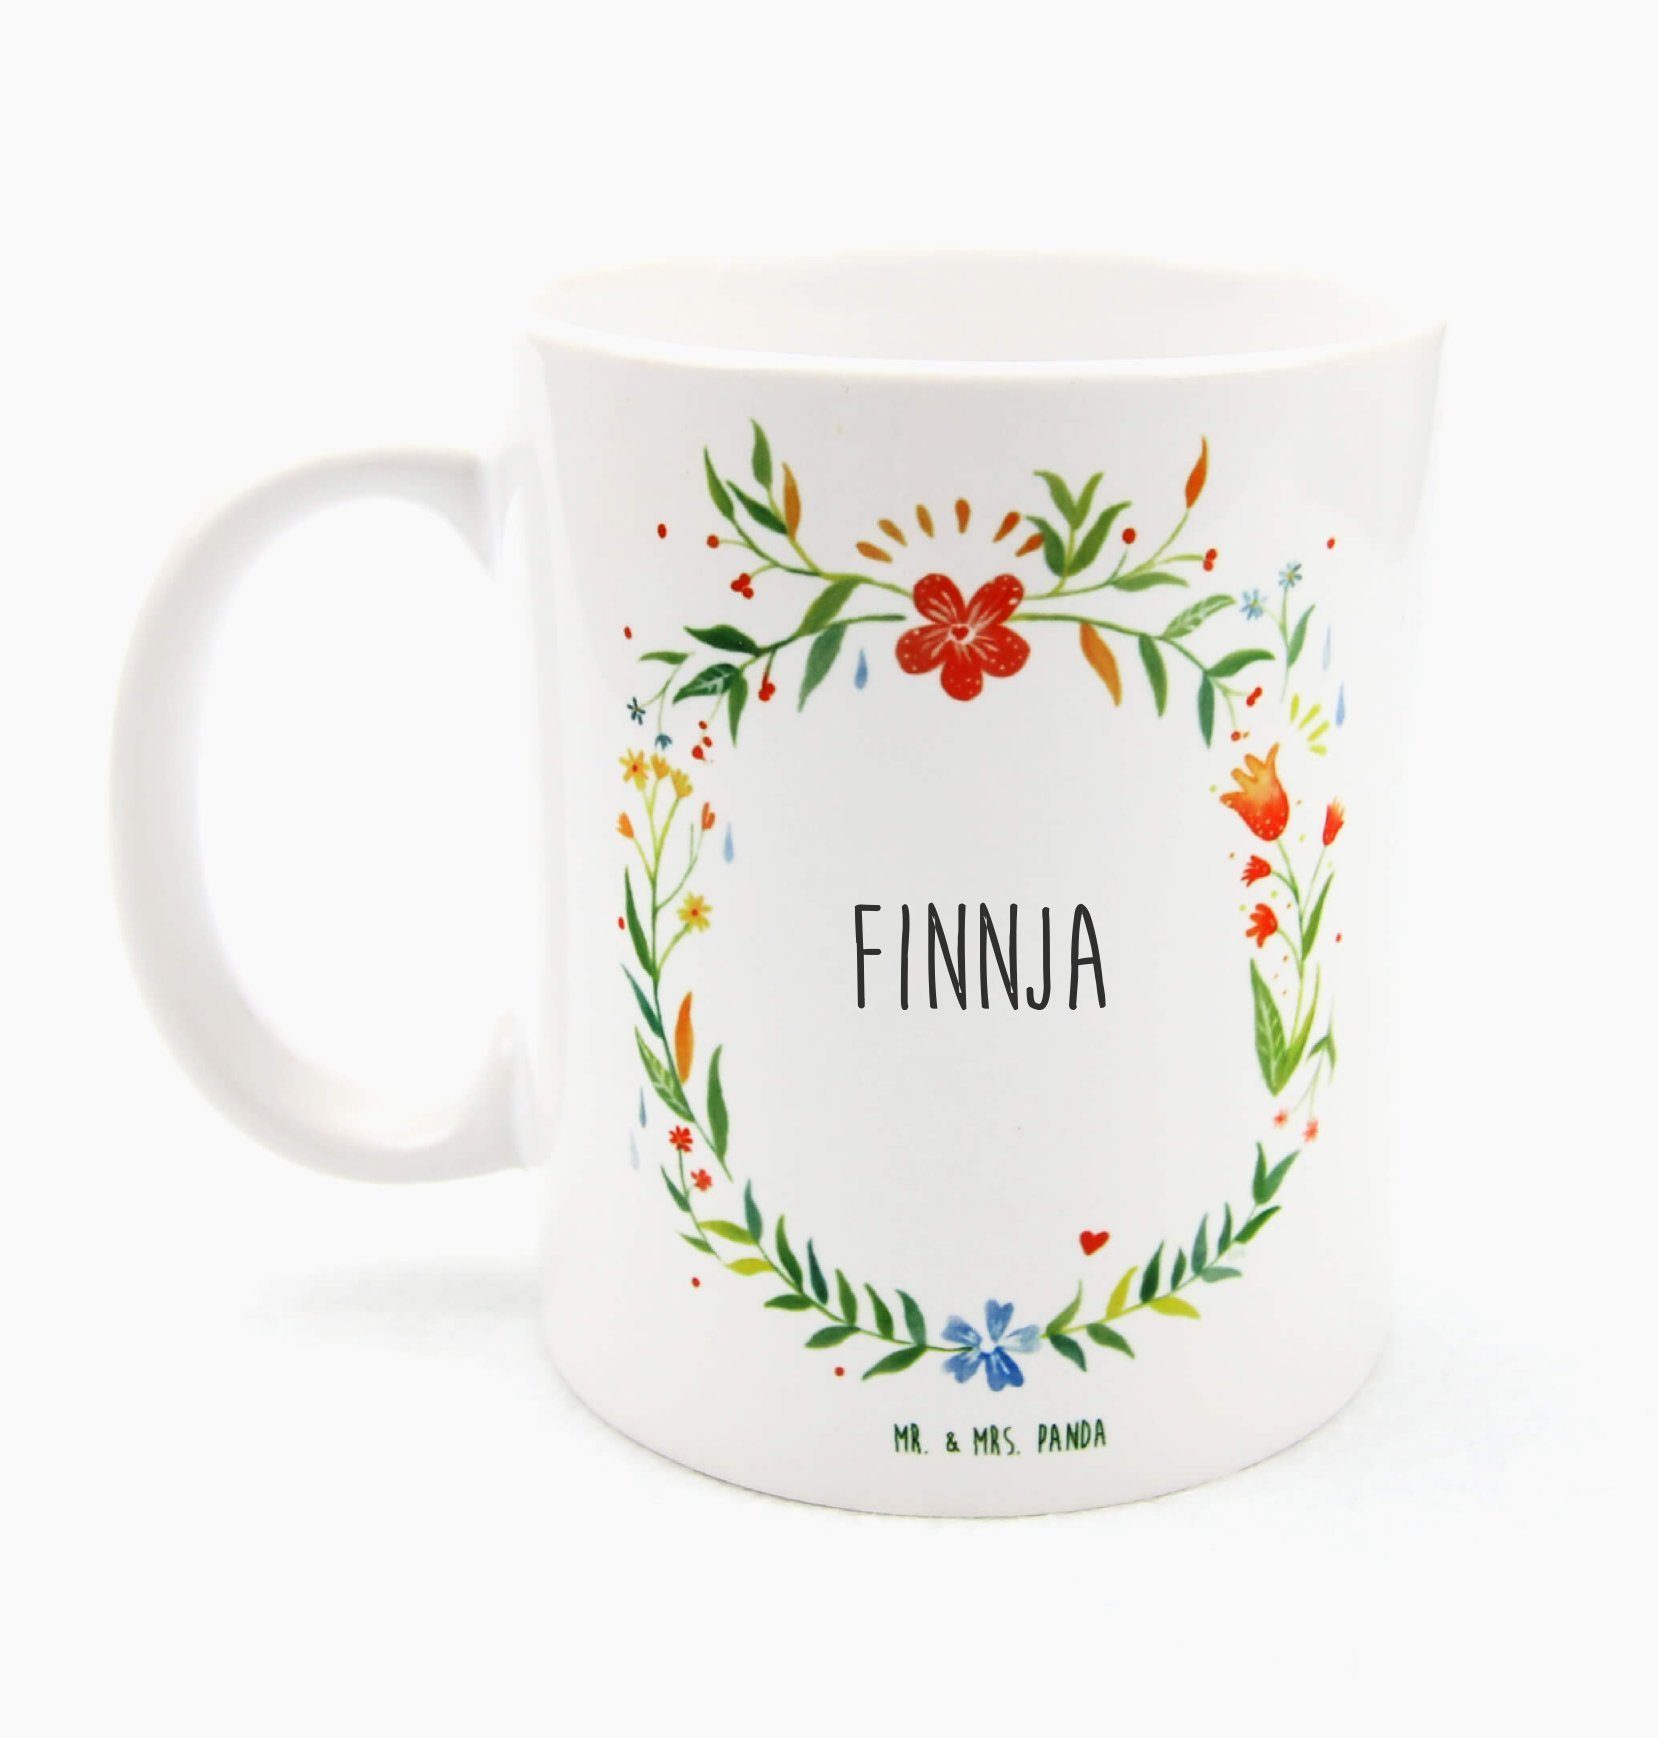 Mr. & Mrs. Panda Tasse Finnja - Geschenk, Keramiktasse, Büro Tasse, Geschenk Tasse, Kaffeebe, Keramik